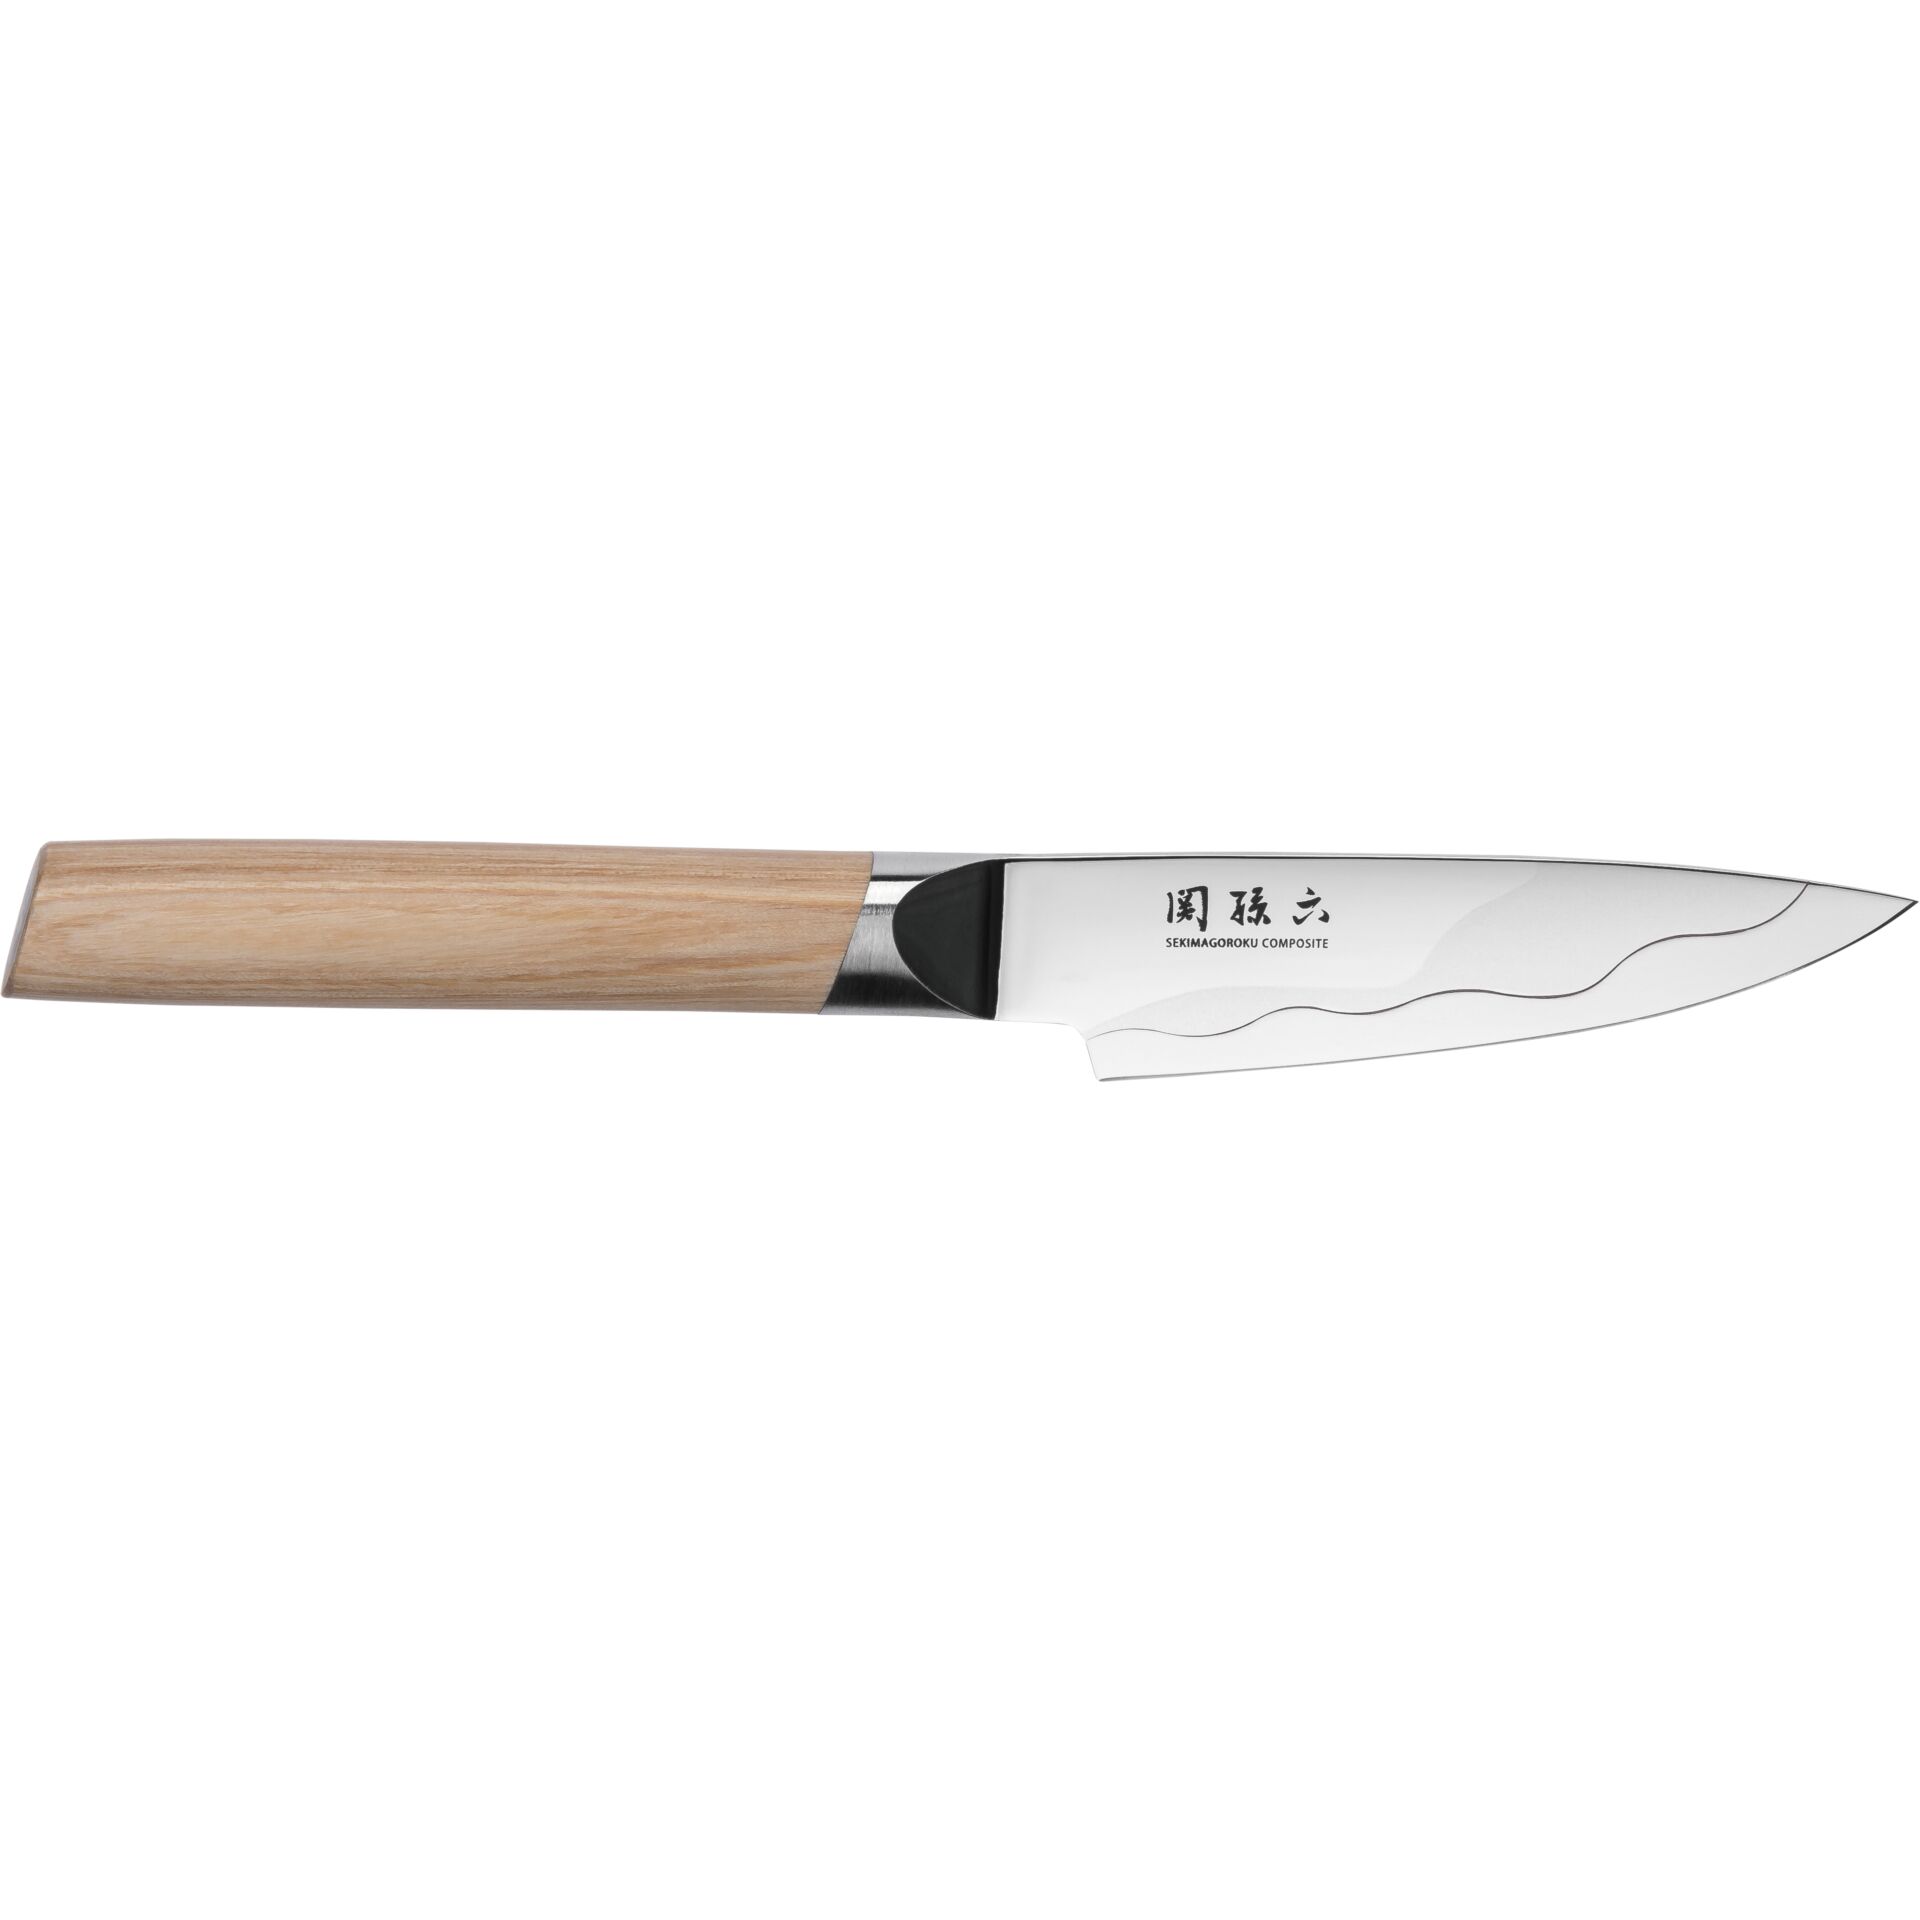 KAI Seki Magoroku Composite coltello da cucina, 9 cm